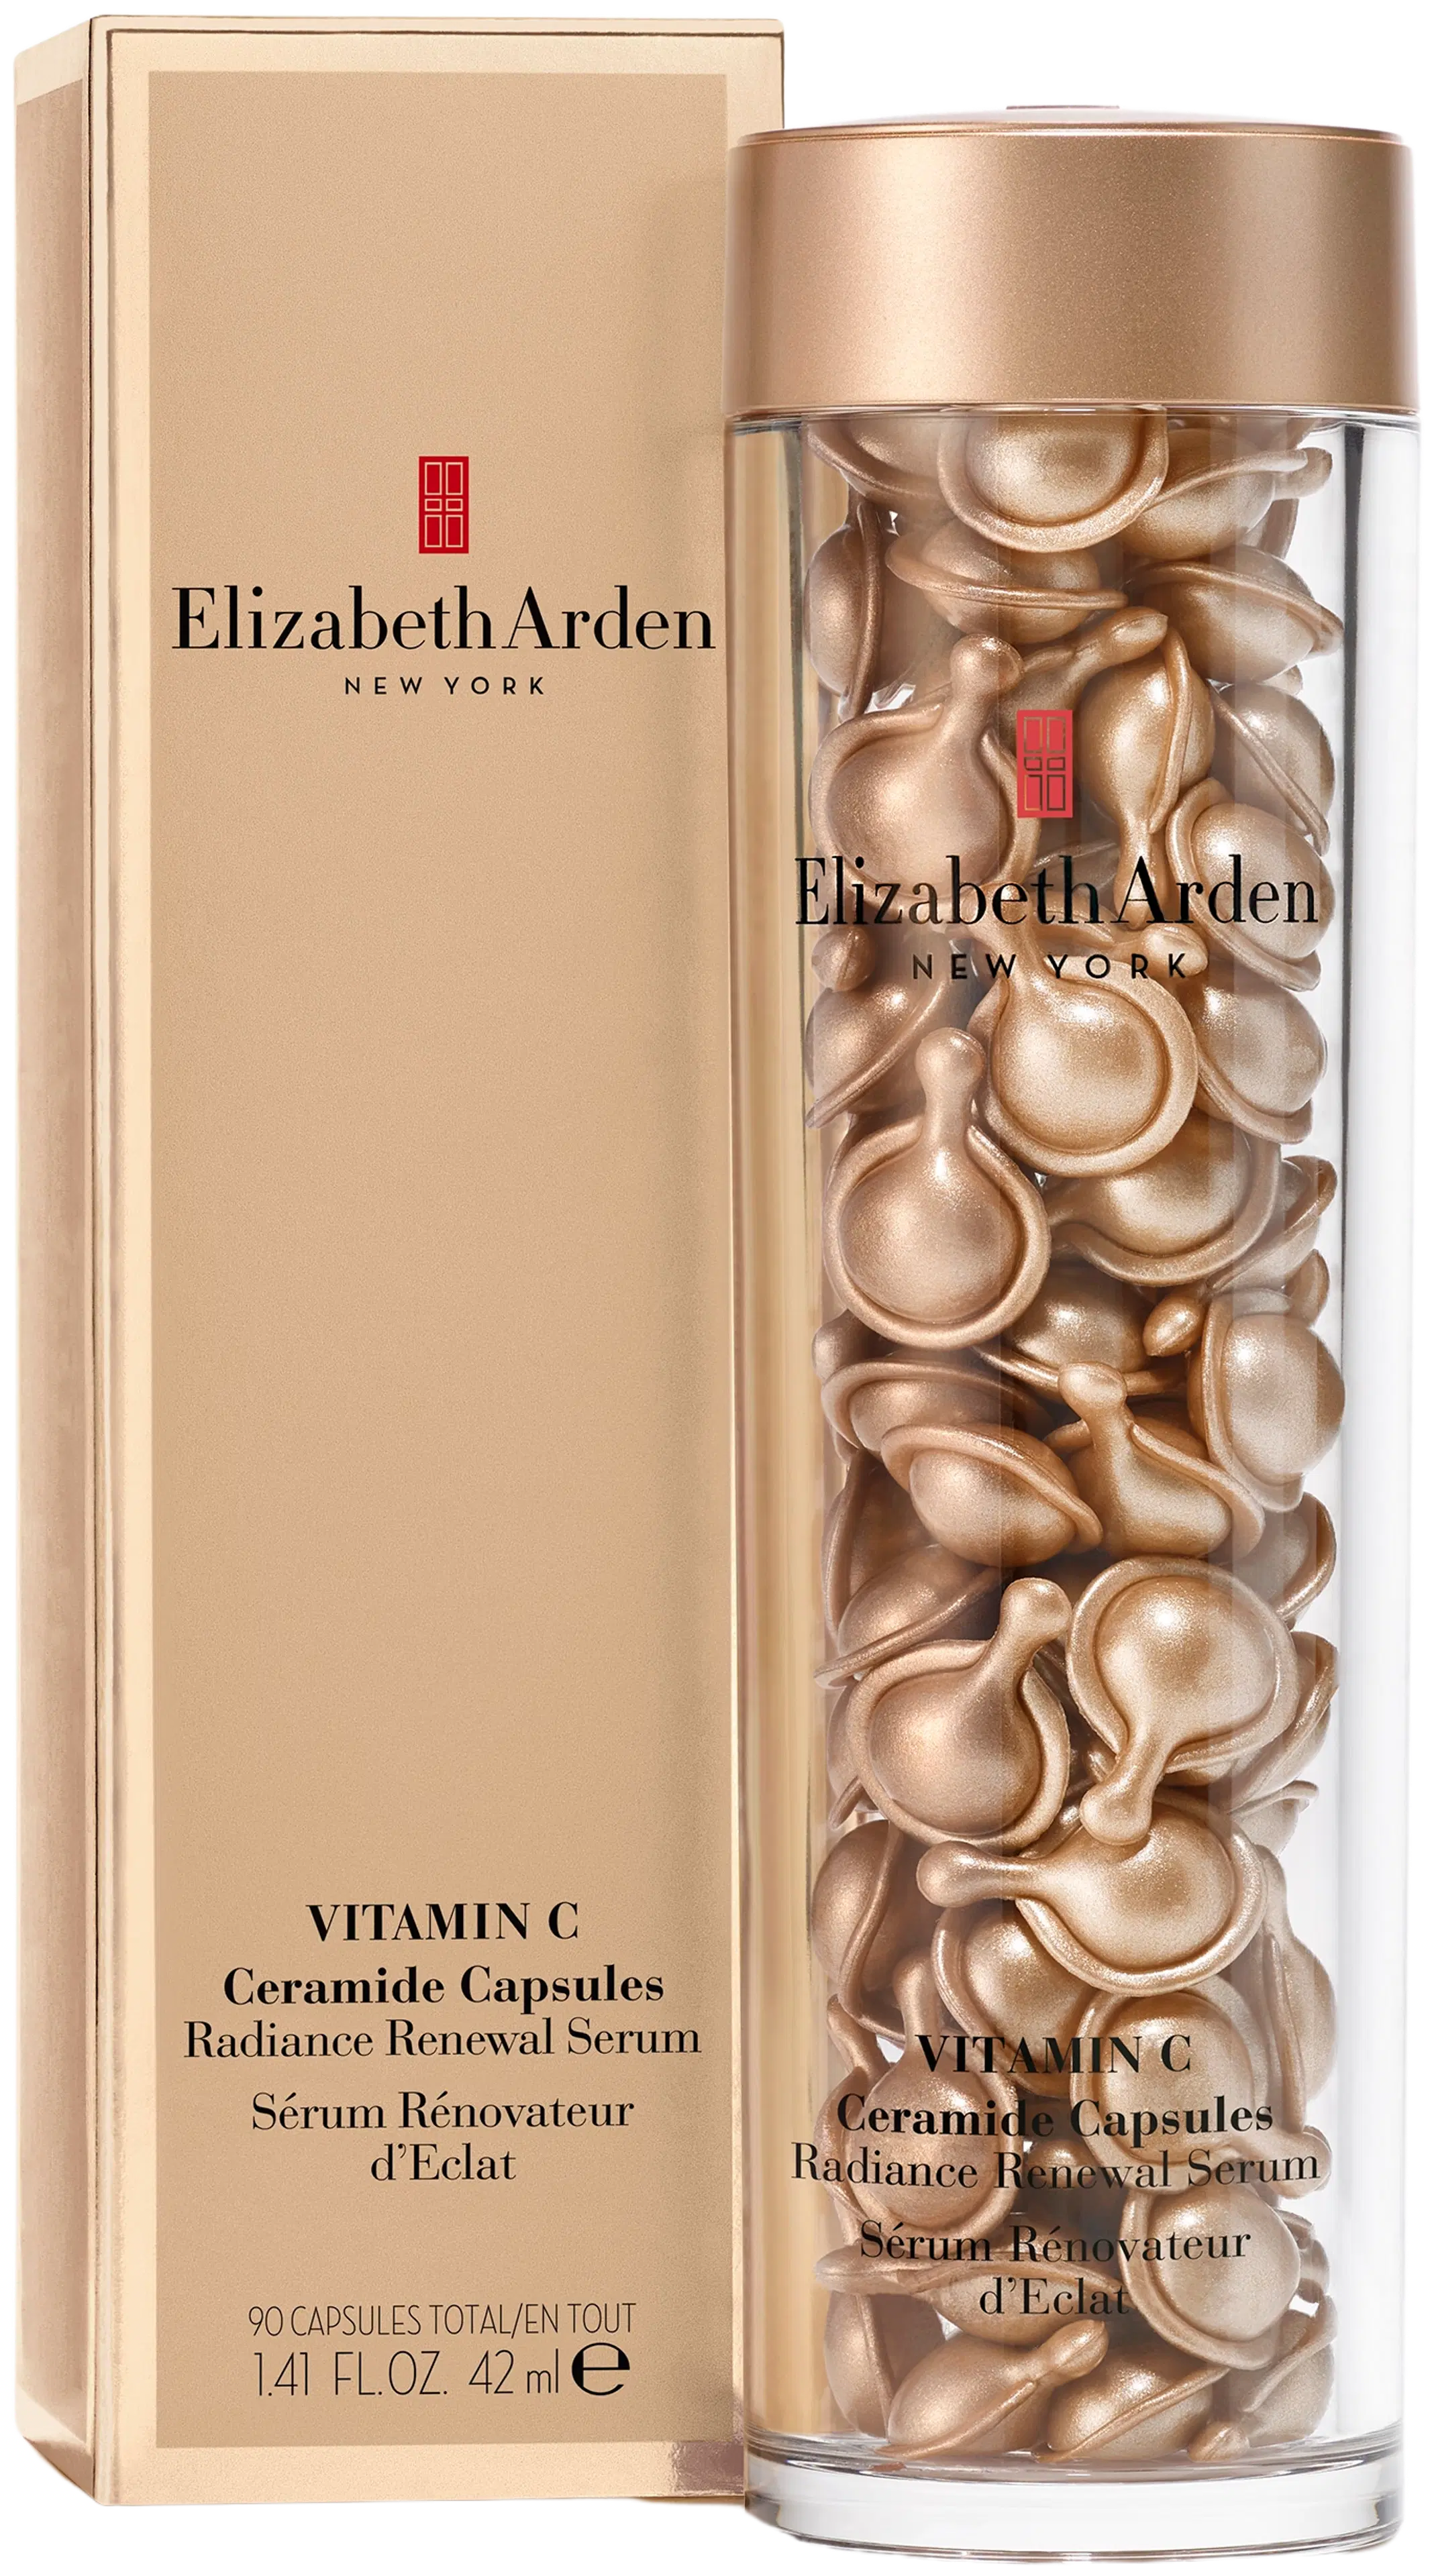 Elizabeth Arden Renewal Serum Vitamin C Ceramide Capsules C-vitamiini kapselit 60 kpl